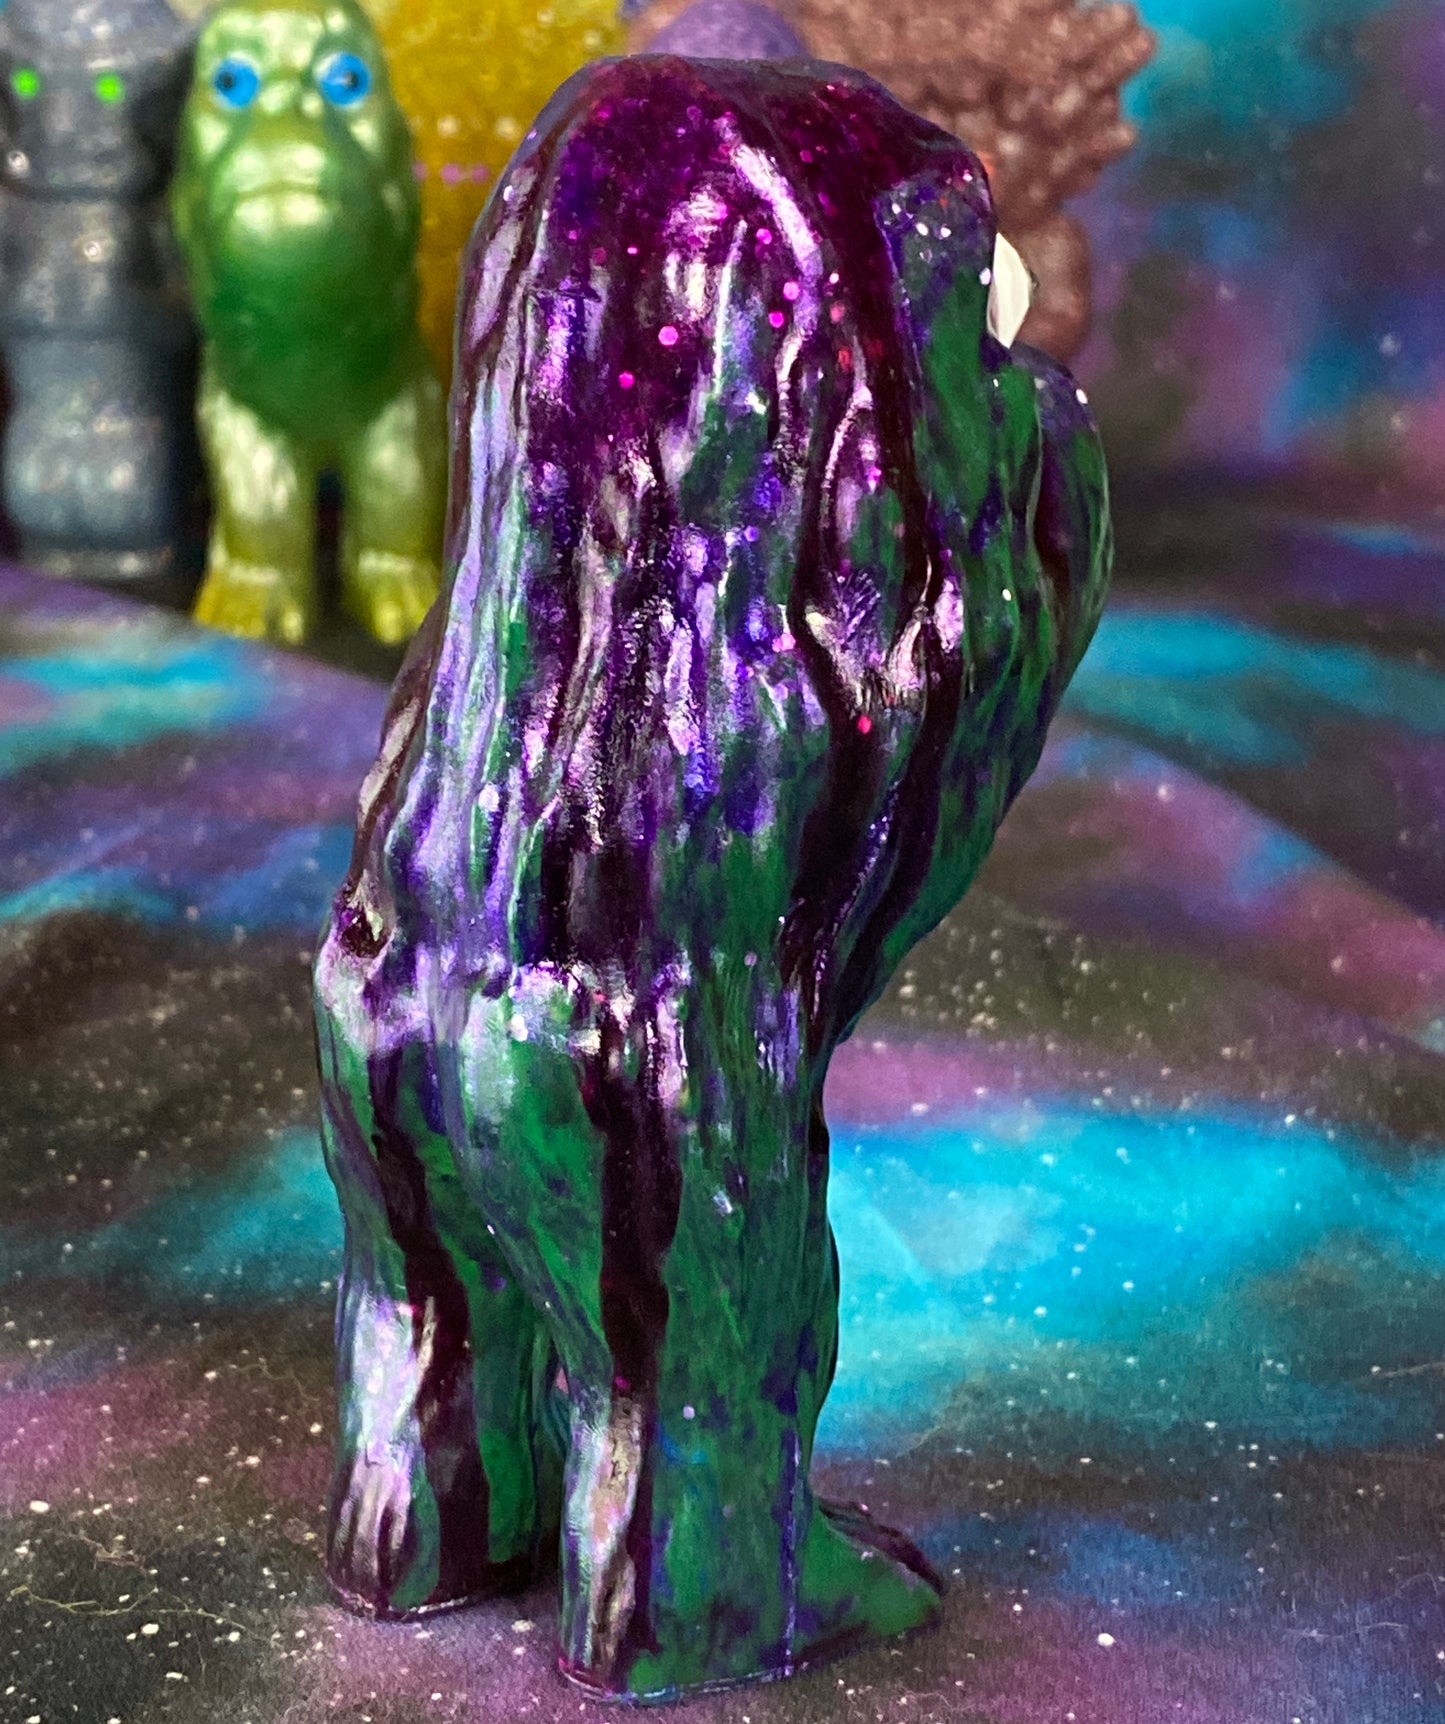 Ape Hopper: Resin Cast with Runny Purple Glitter